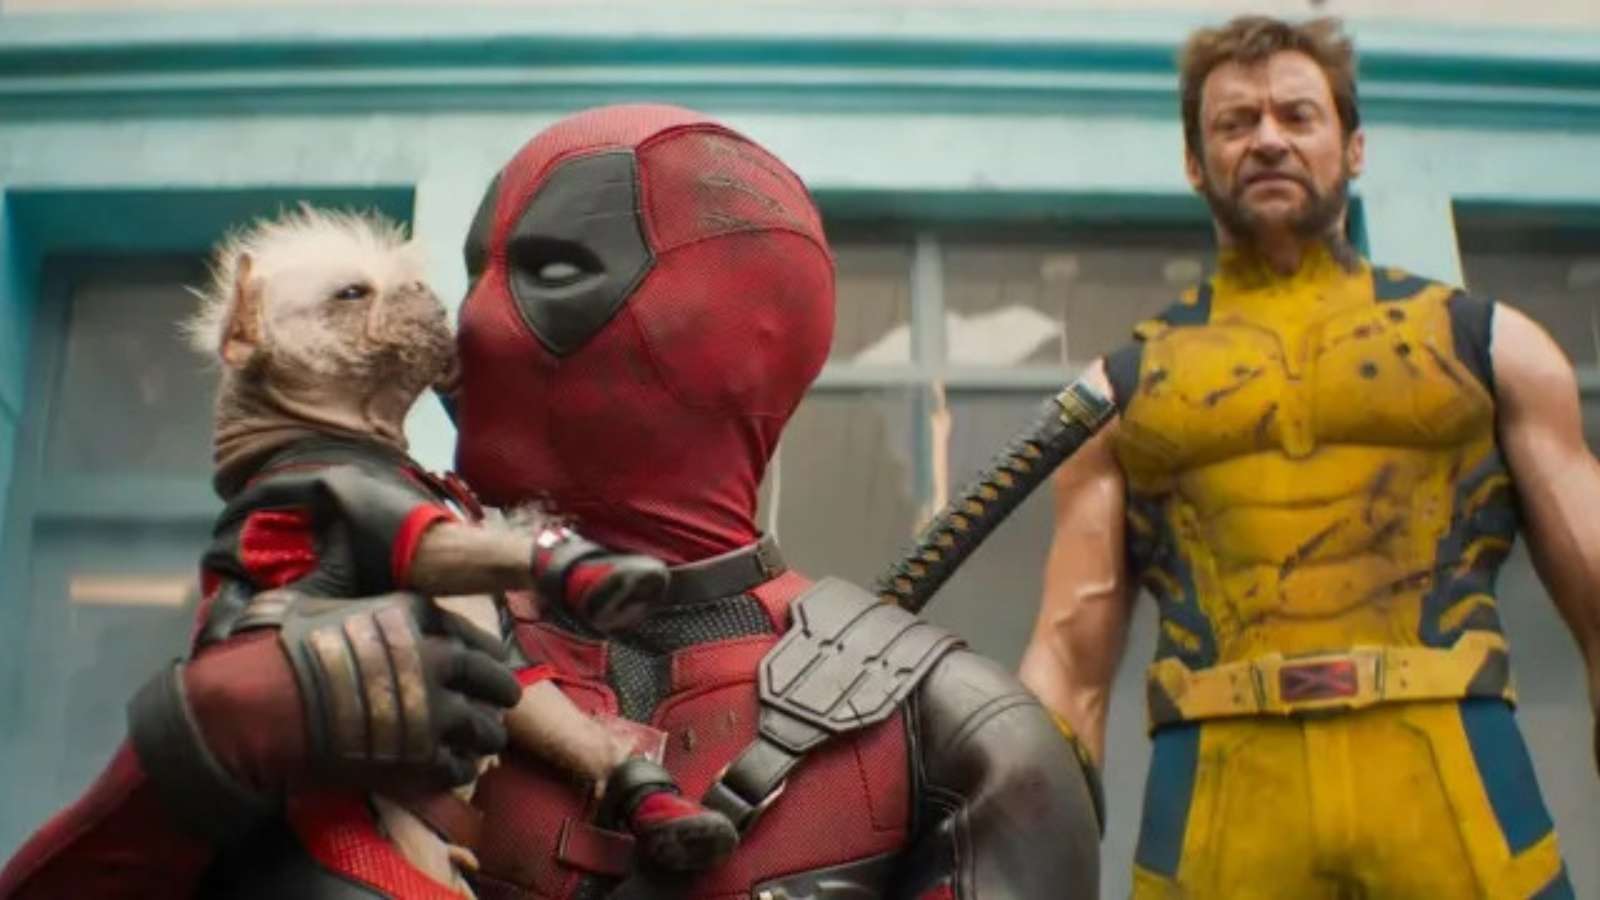 Marvel llama a Deadpool y Wolverine su “mayor error” en una sinopsis llena de groserías - Dexerto